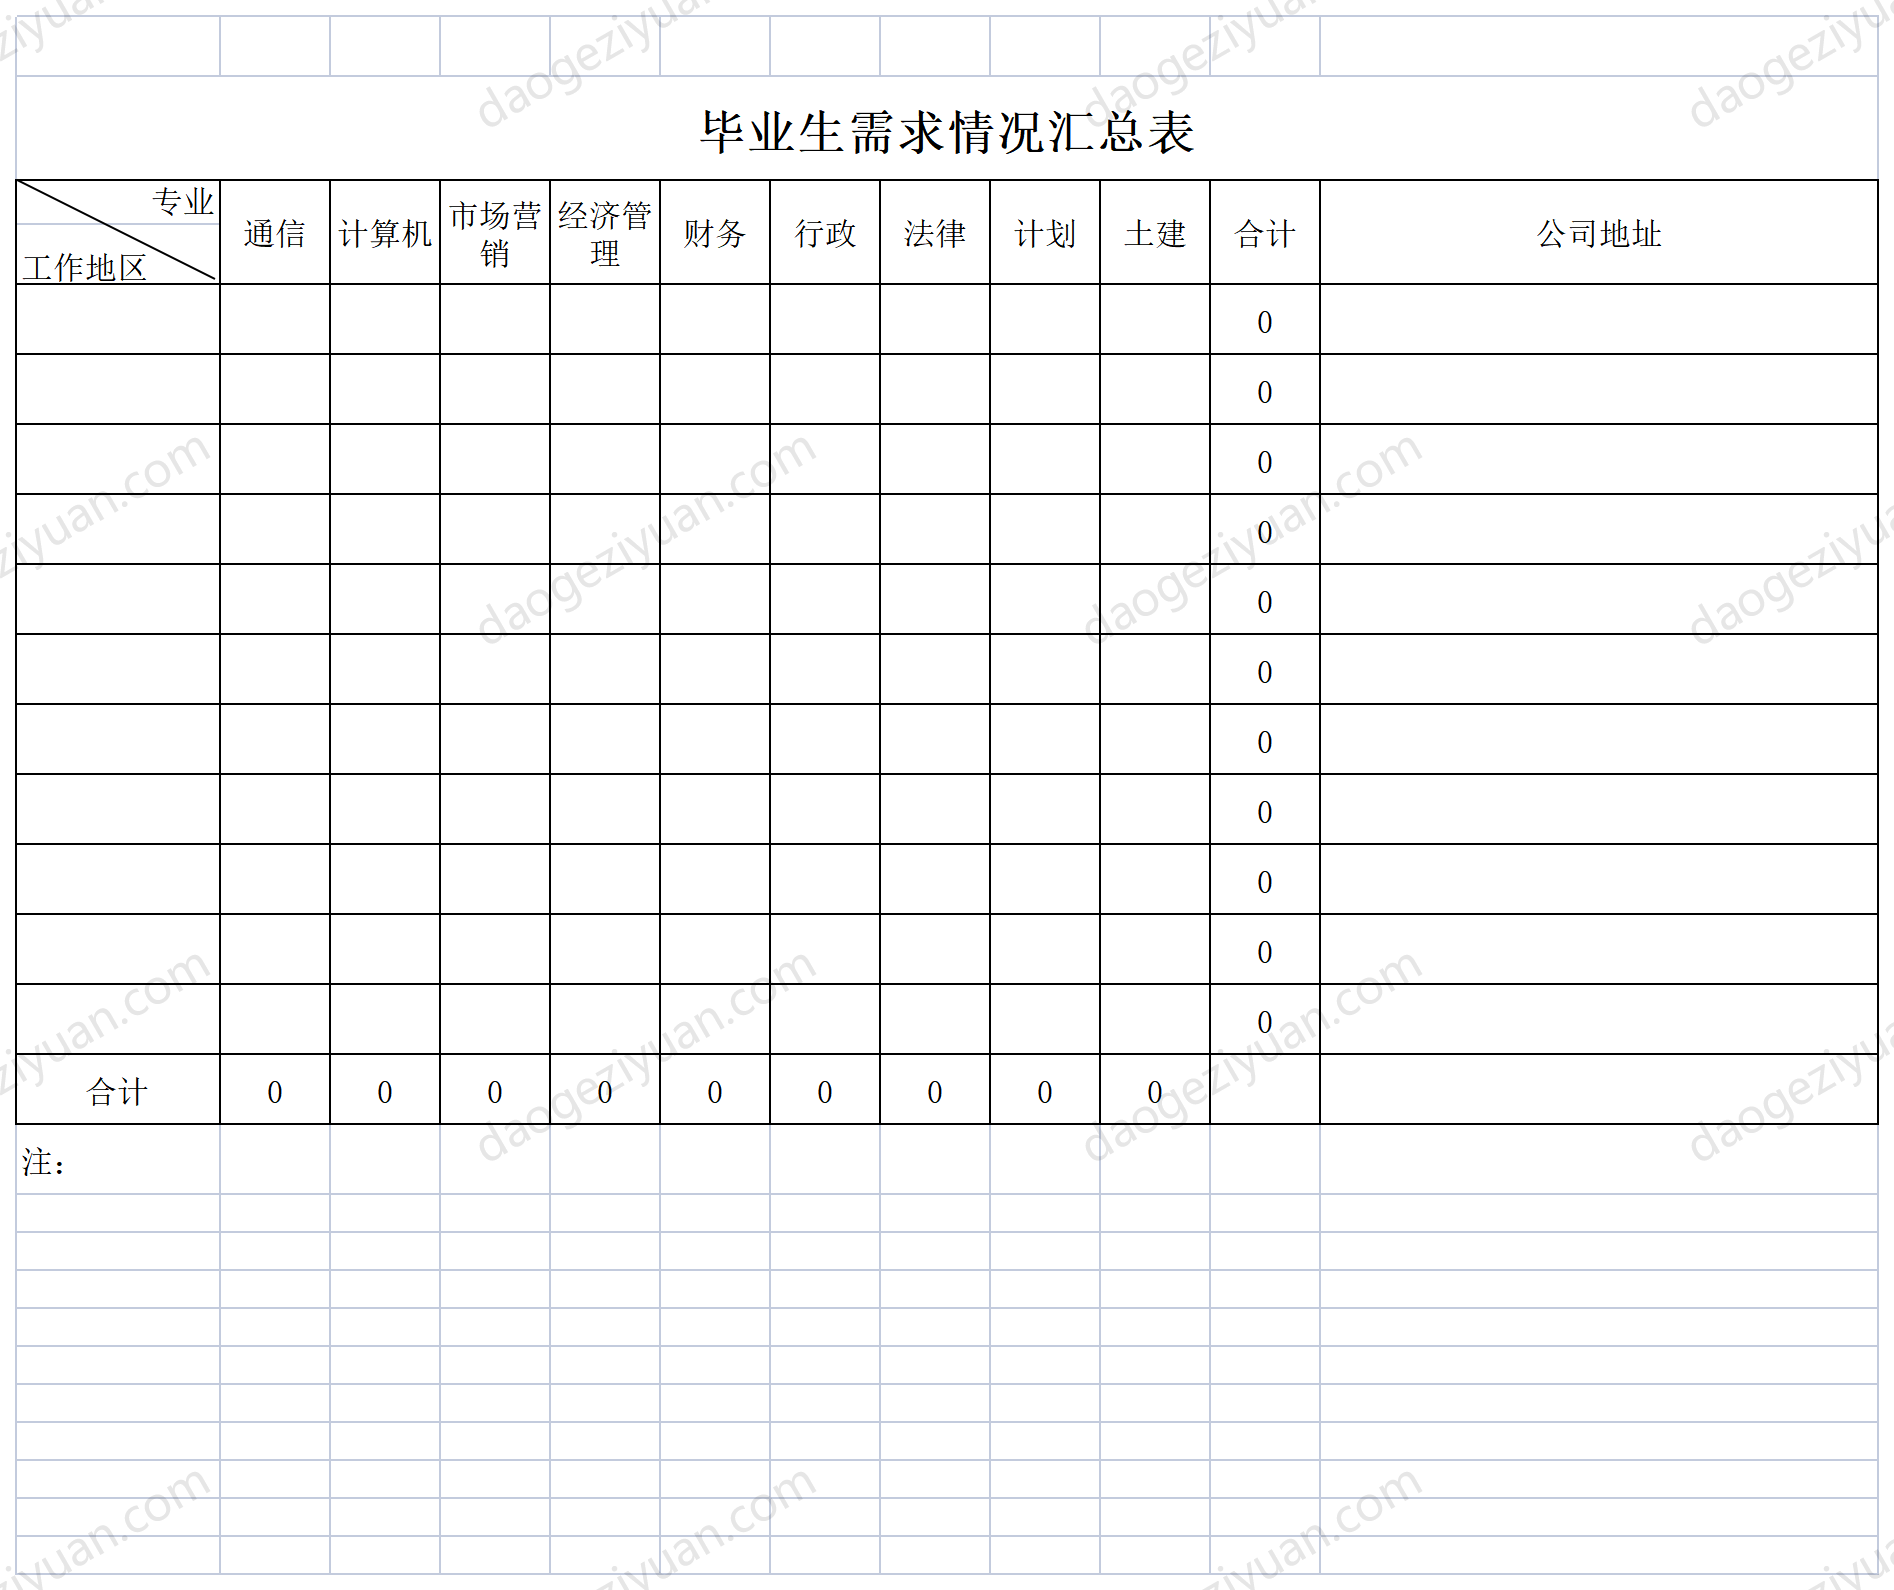 Graduate needs summary table.xls